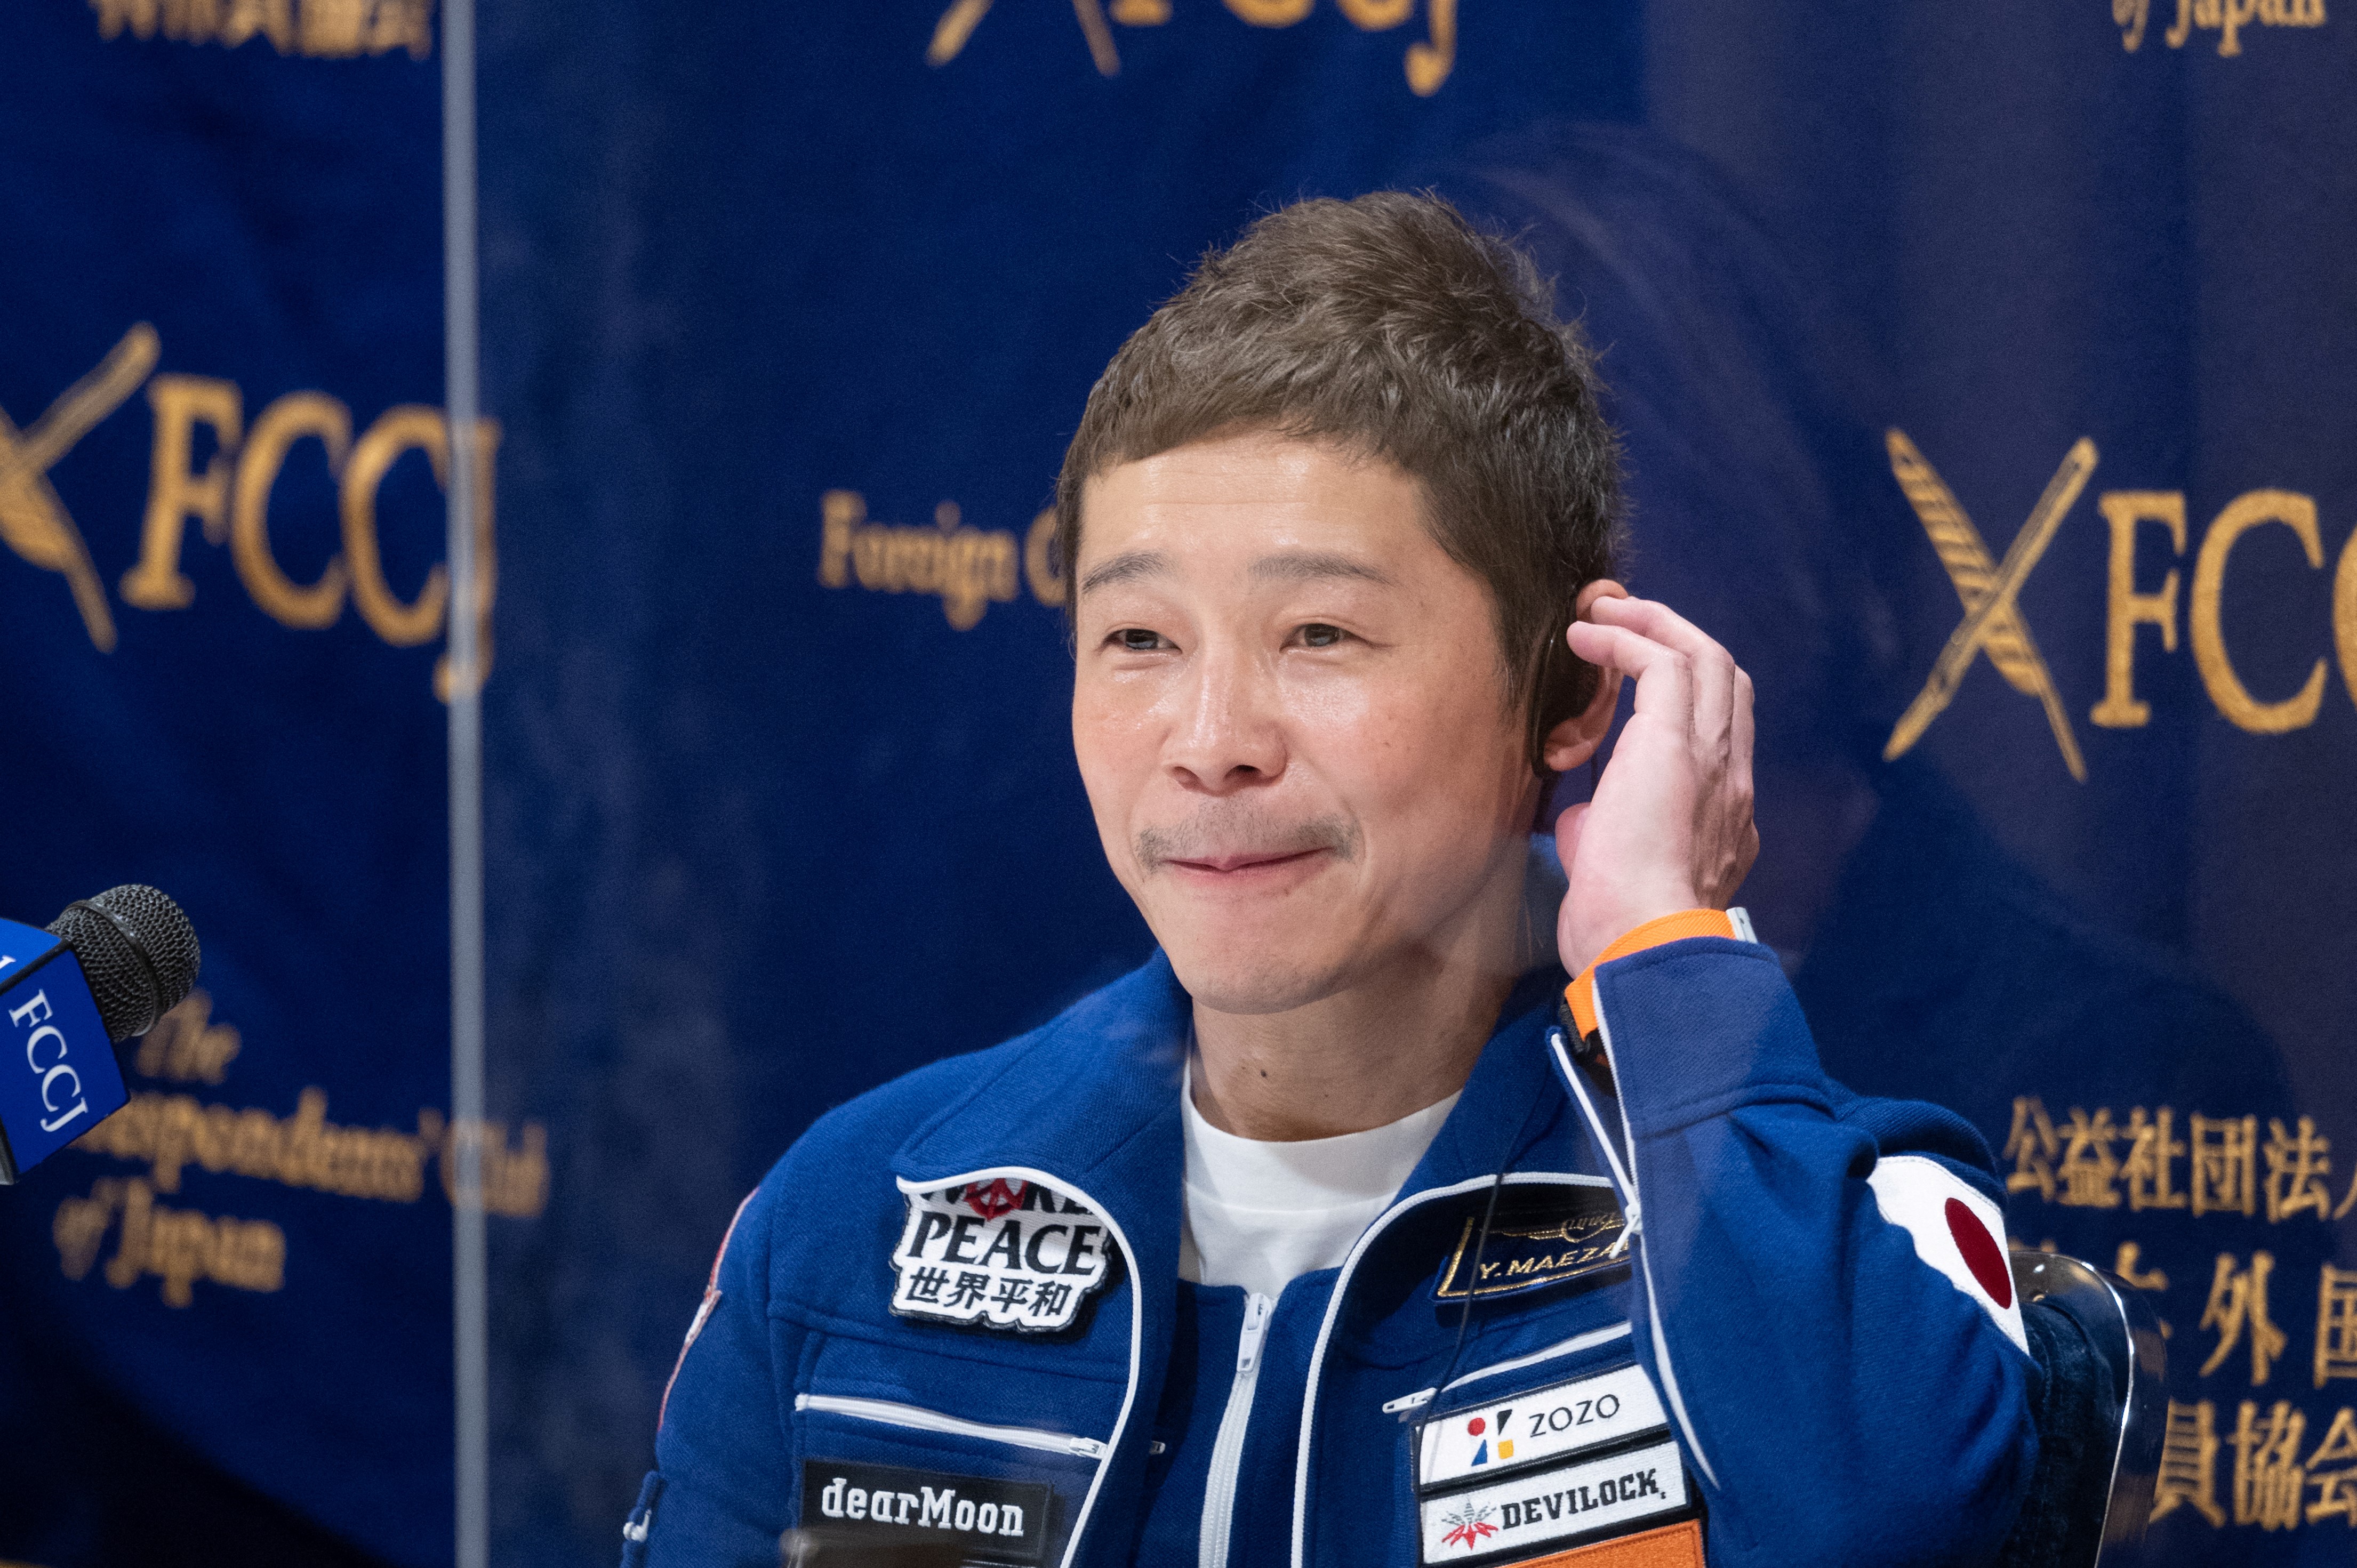 Decemberben az űrben járt, most a Mariana-árokba készül a japán milliárdos